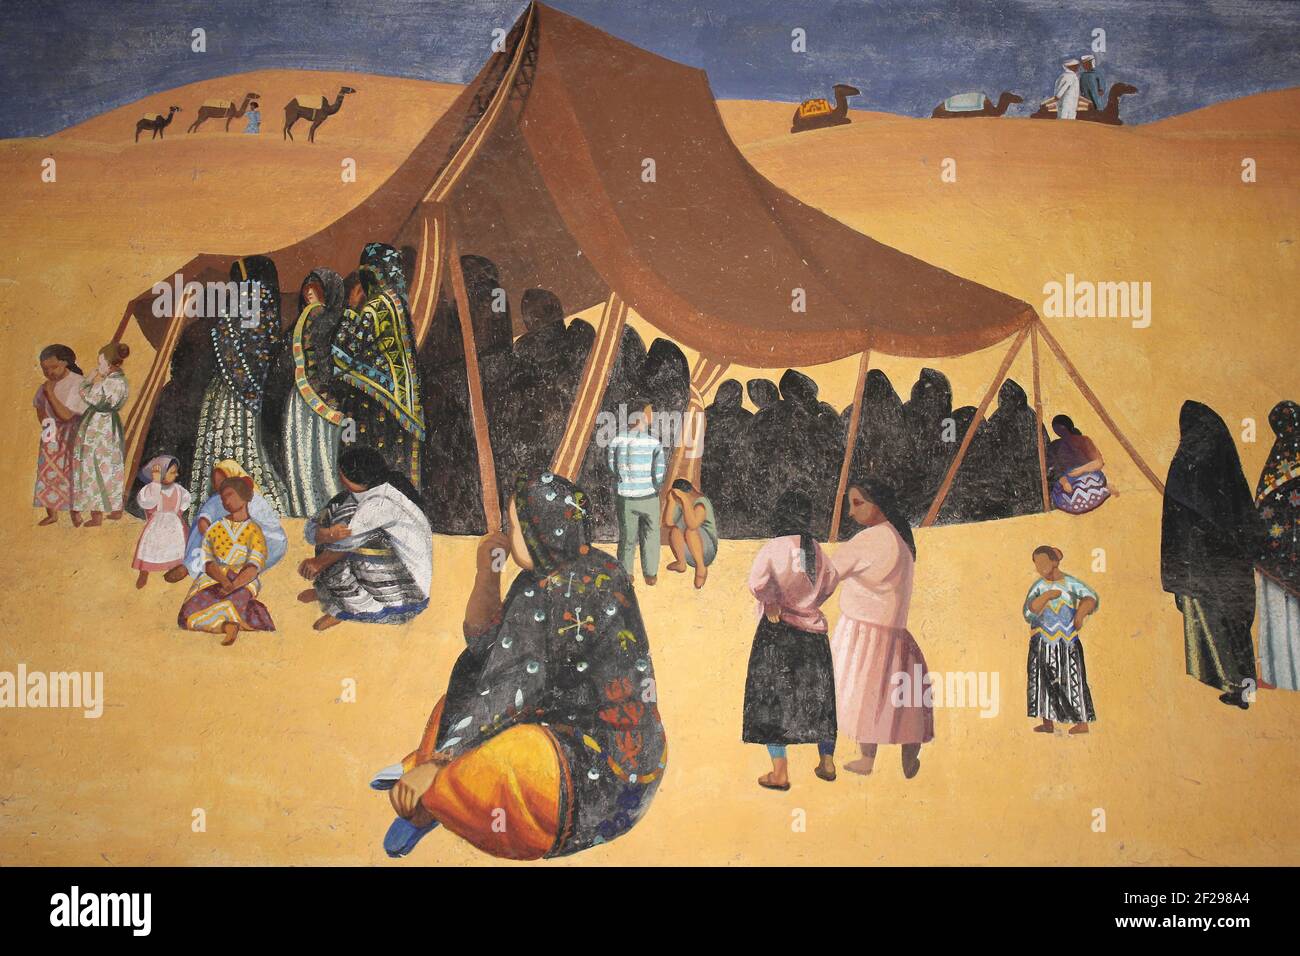 Art bédouin marocain montrant tente et chameaux au Sahara Dunes de sable Banque D'Images